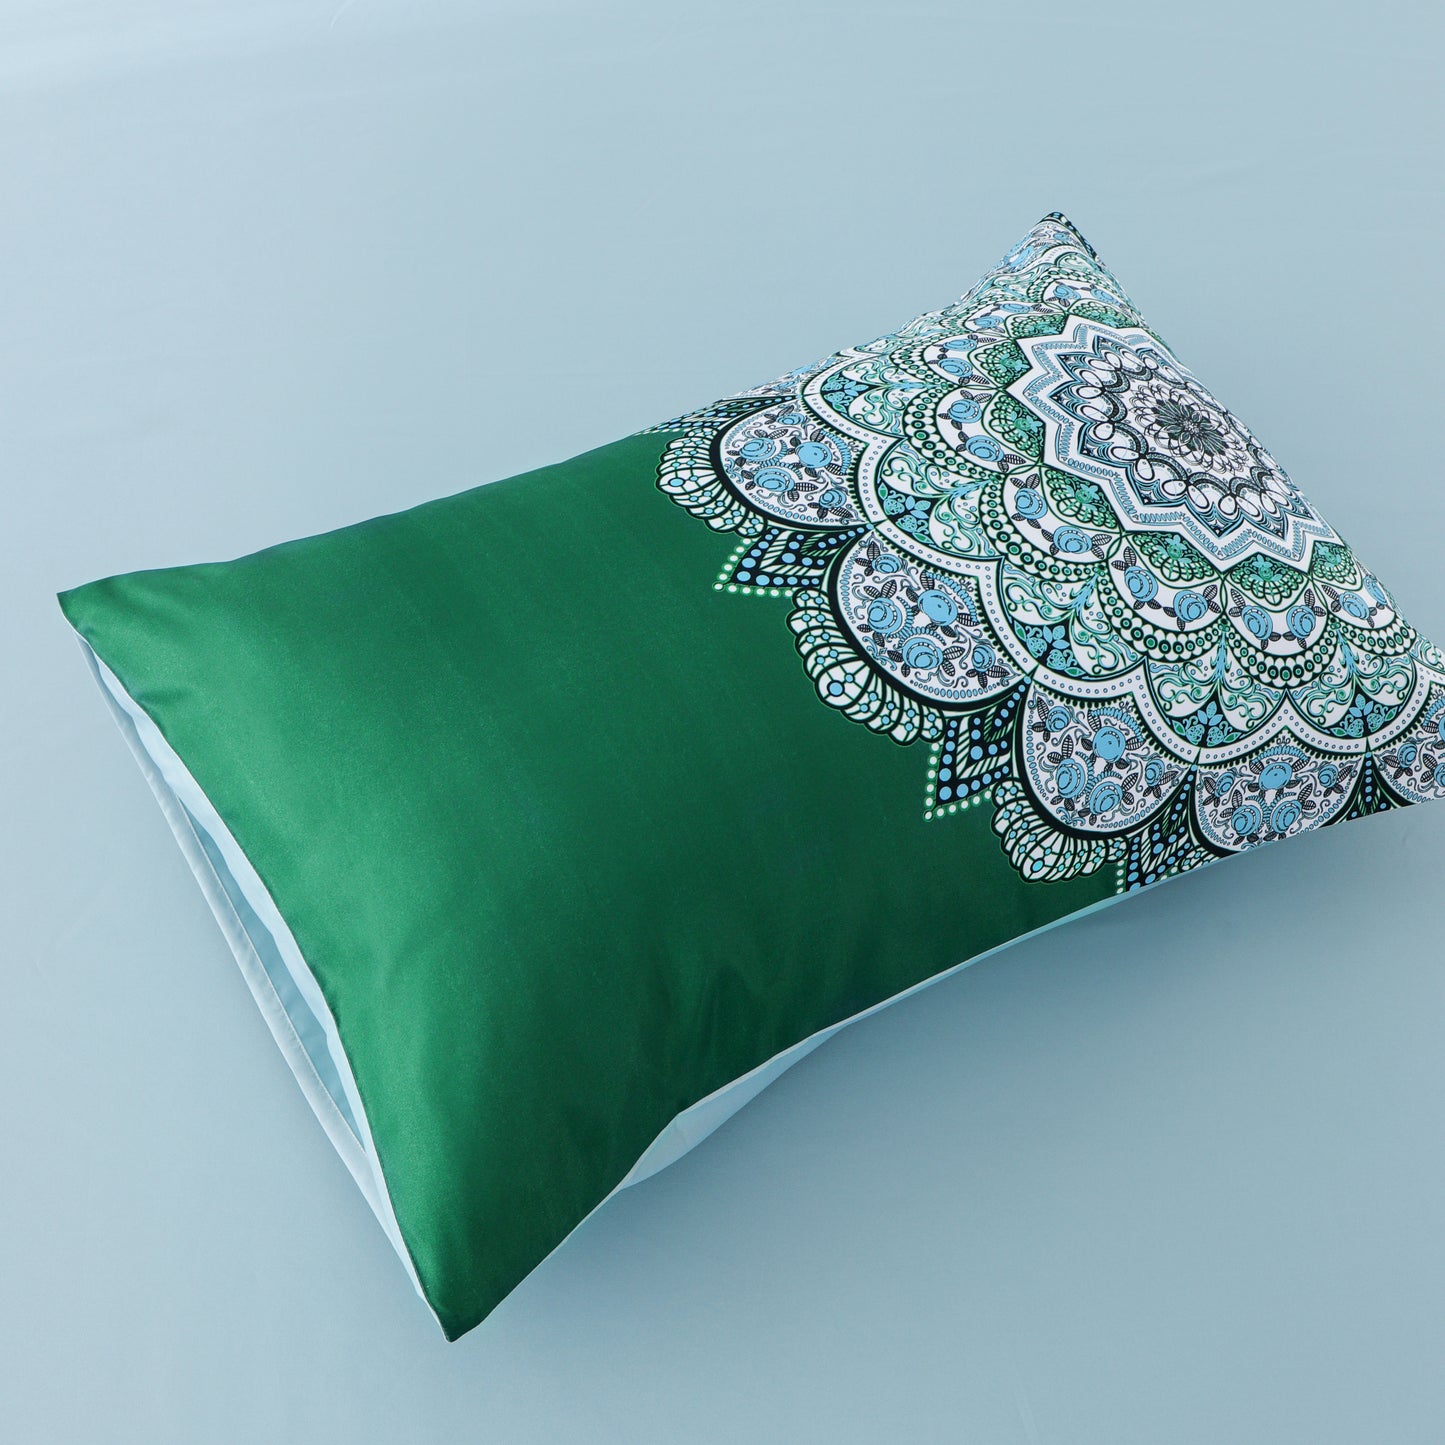 Duvet cover luxury-Green